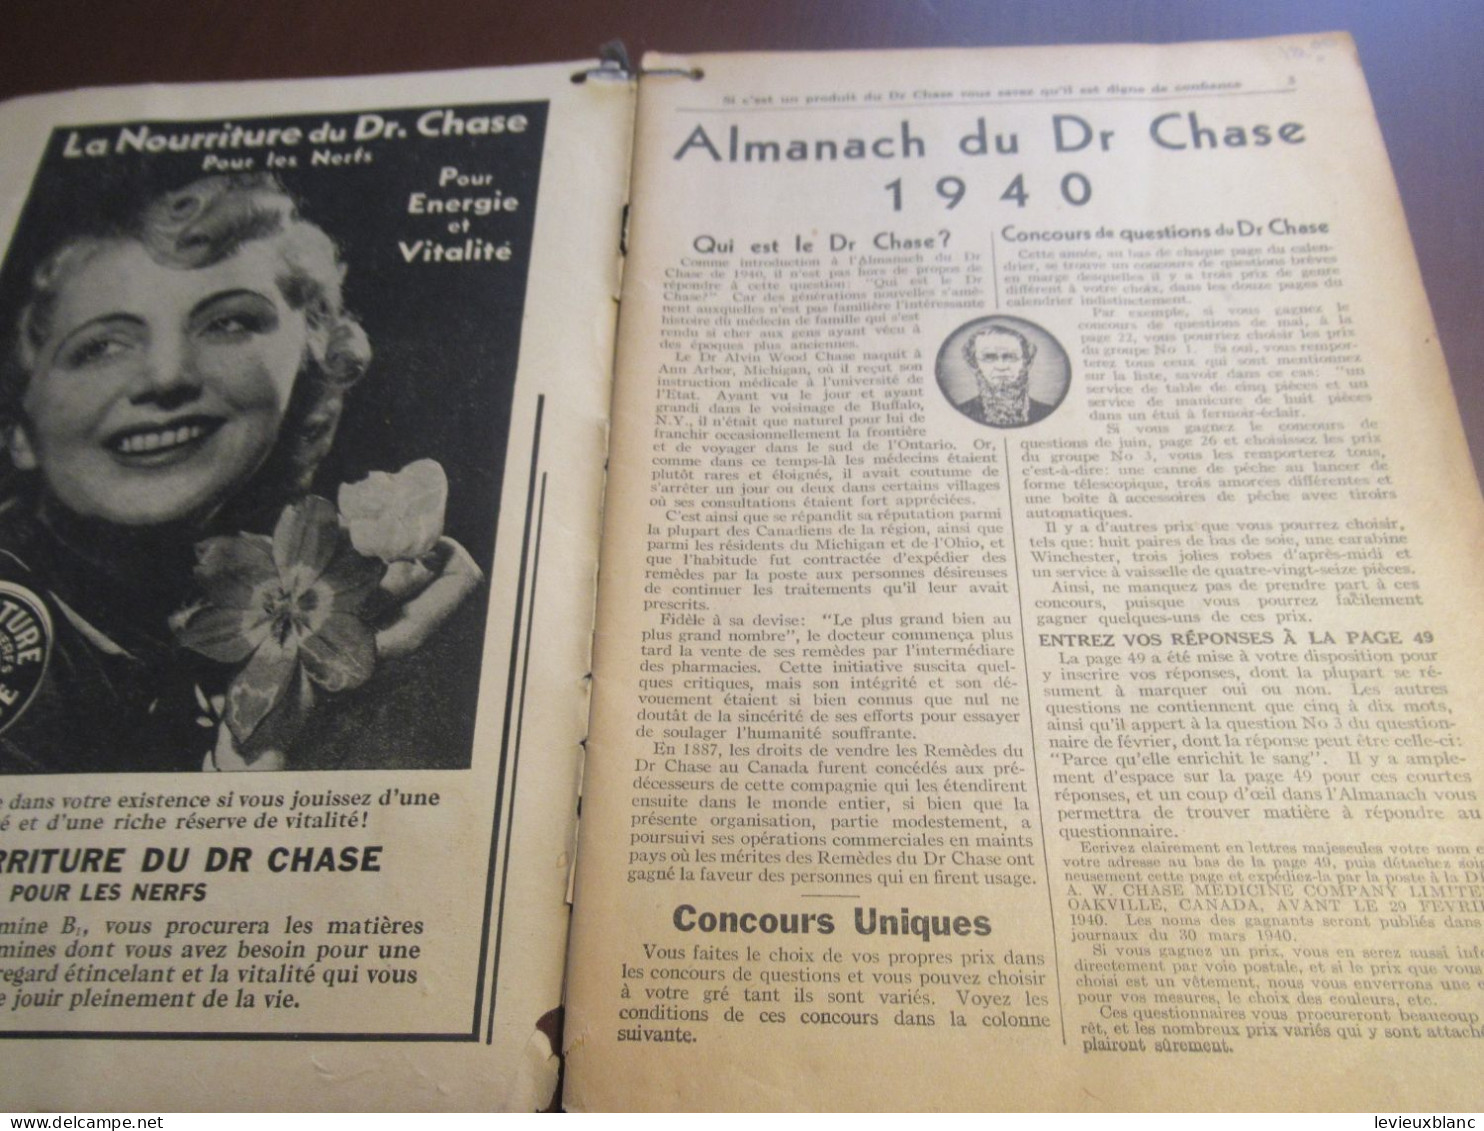 Almanach Calendrier Du Dr A.W. CHASE Pour Le Foyer, L'Atelier, La Ferme, Le Bureau/ Oakville-Canada/1940            ALM3 - Groot Formaat: 1921-40